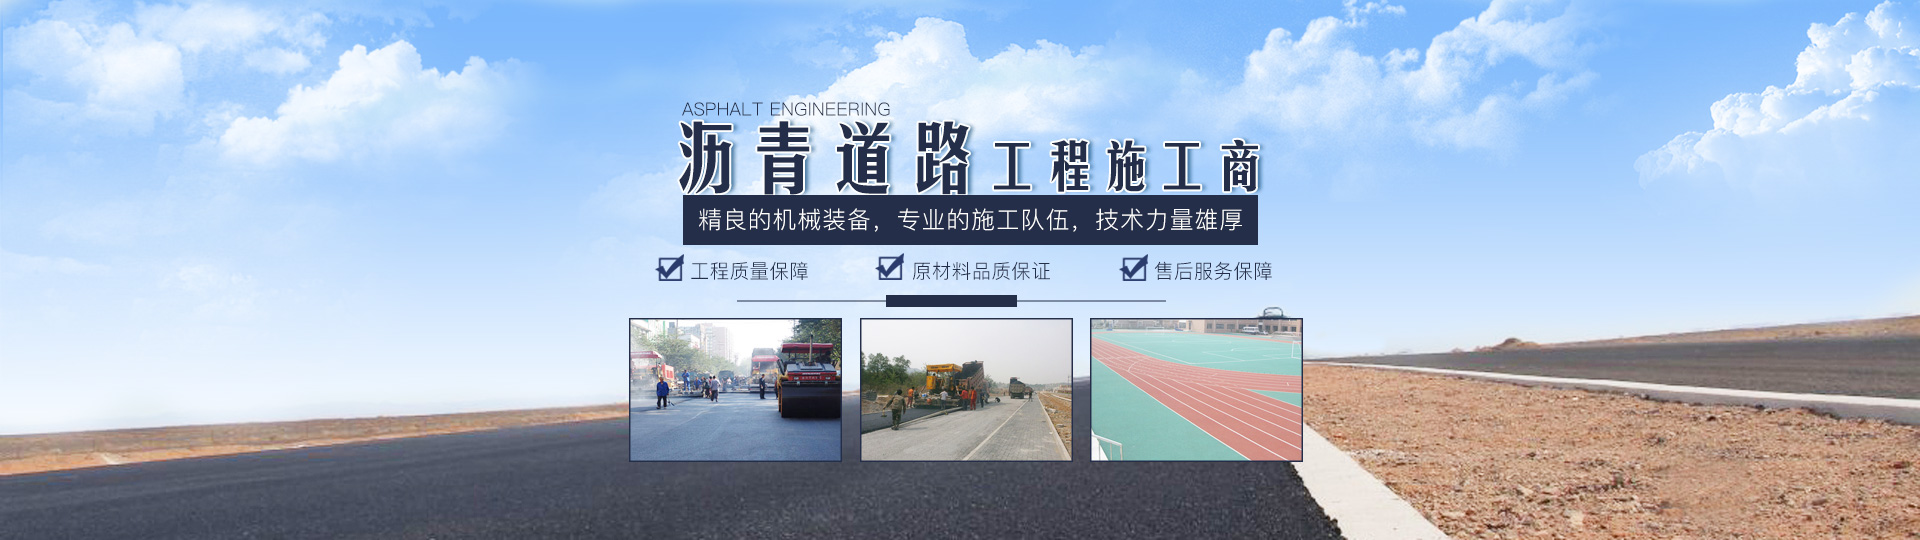 湖南星遠工程有限公司_長沙市政工程施工承包|長沙公路工程承包|長沙綠化工程承包